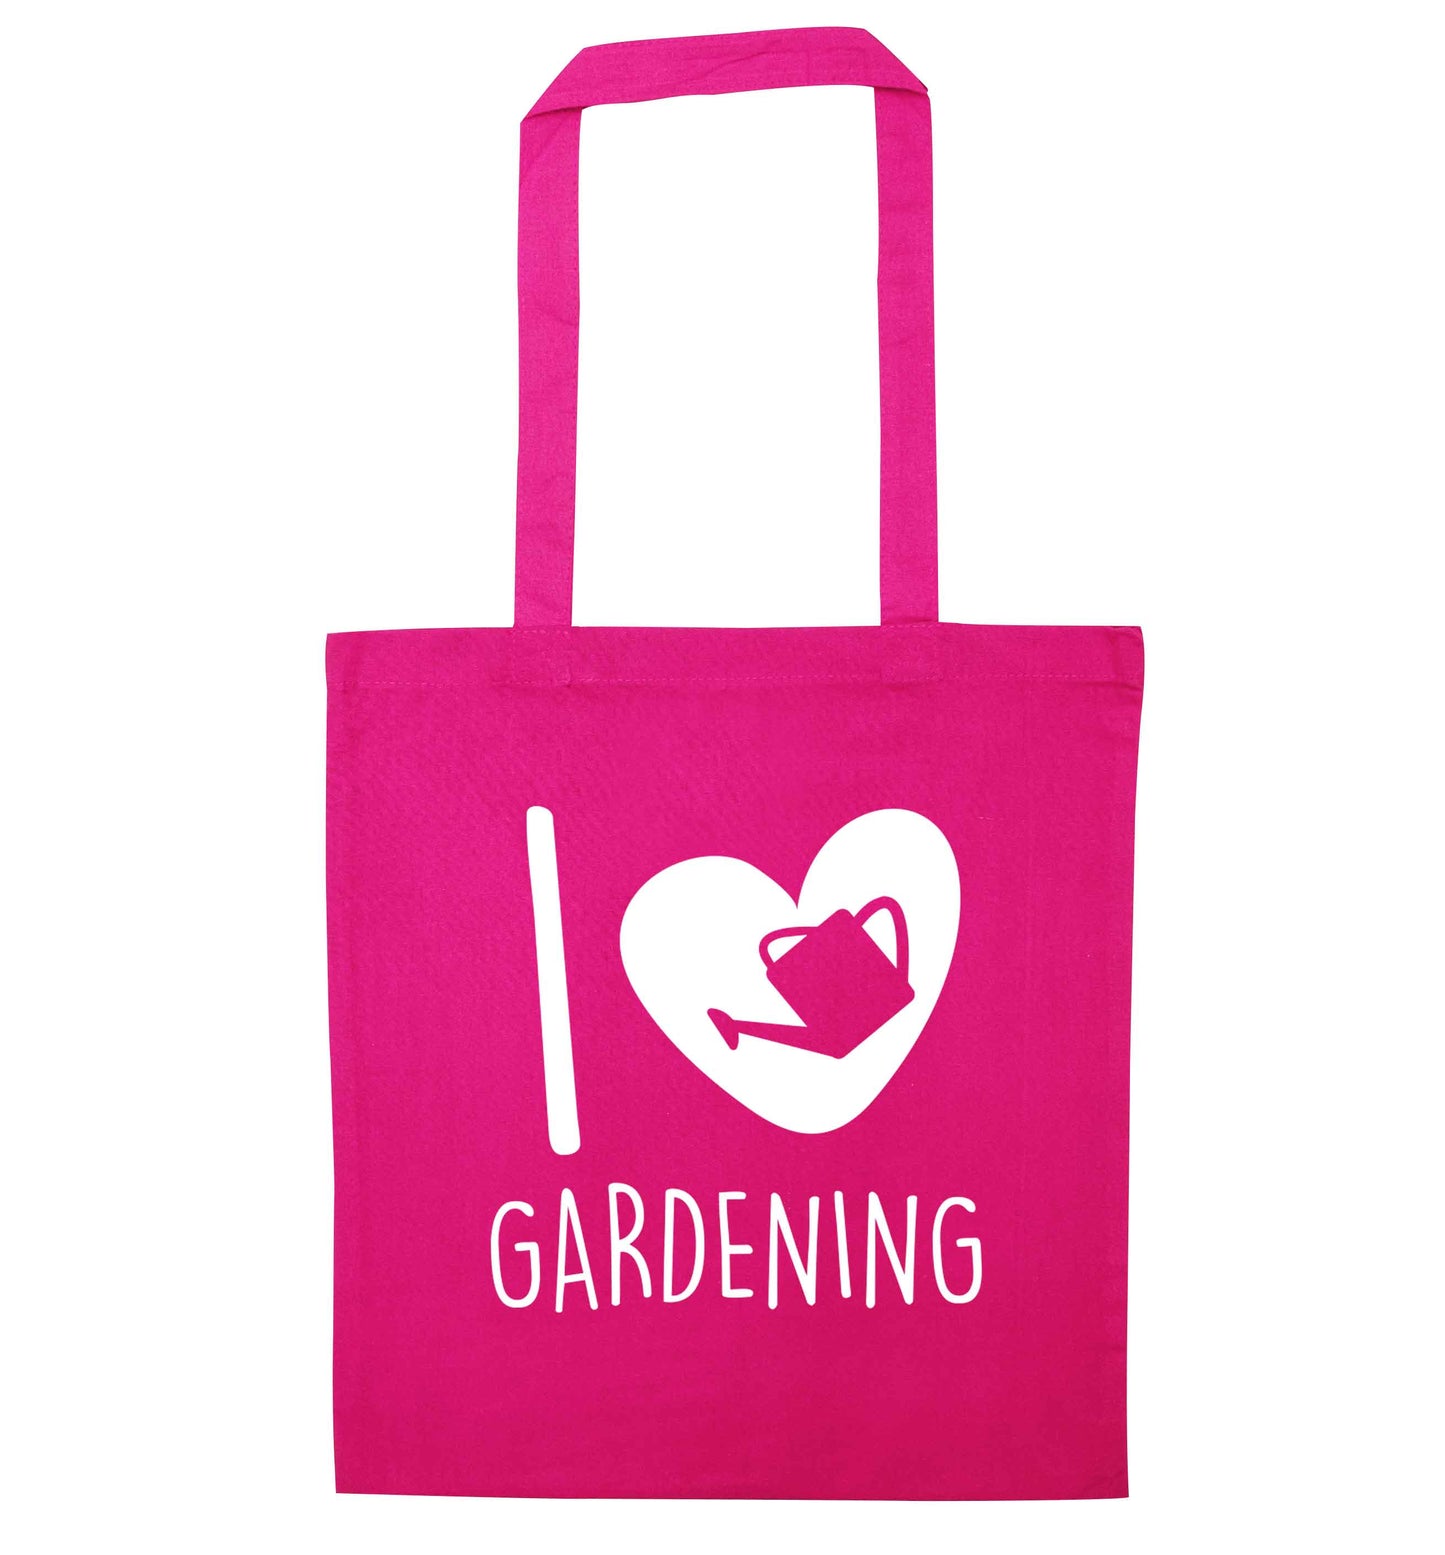 I love gardening pink tote bag